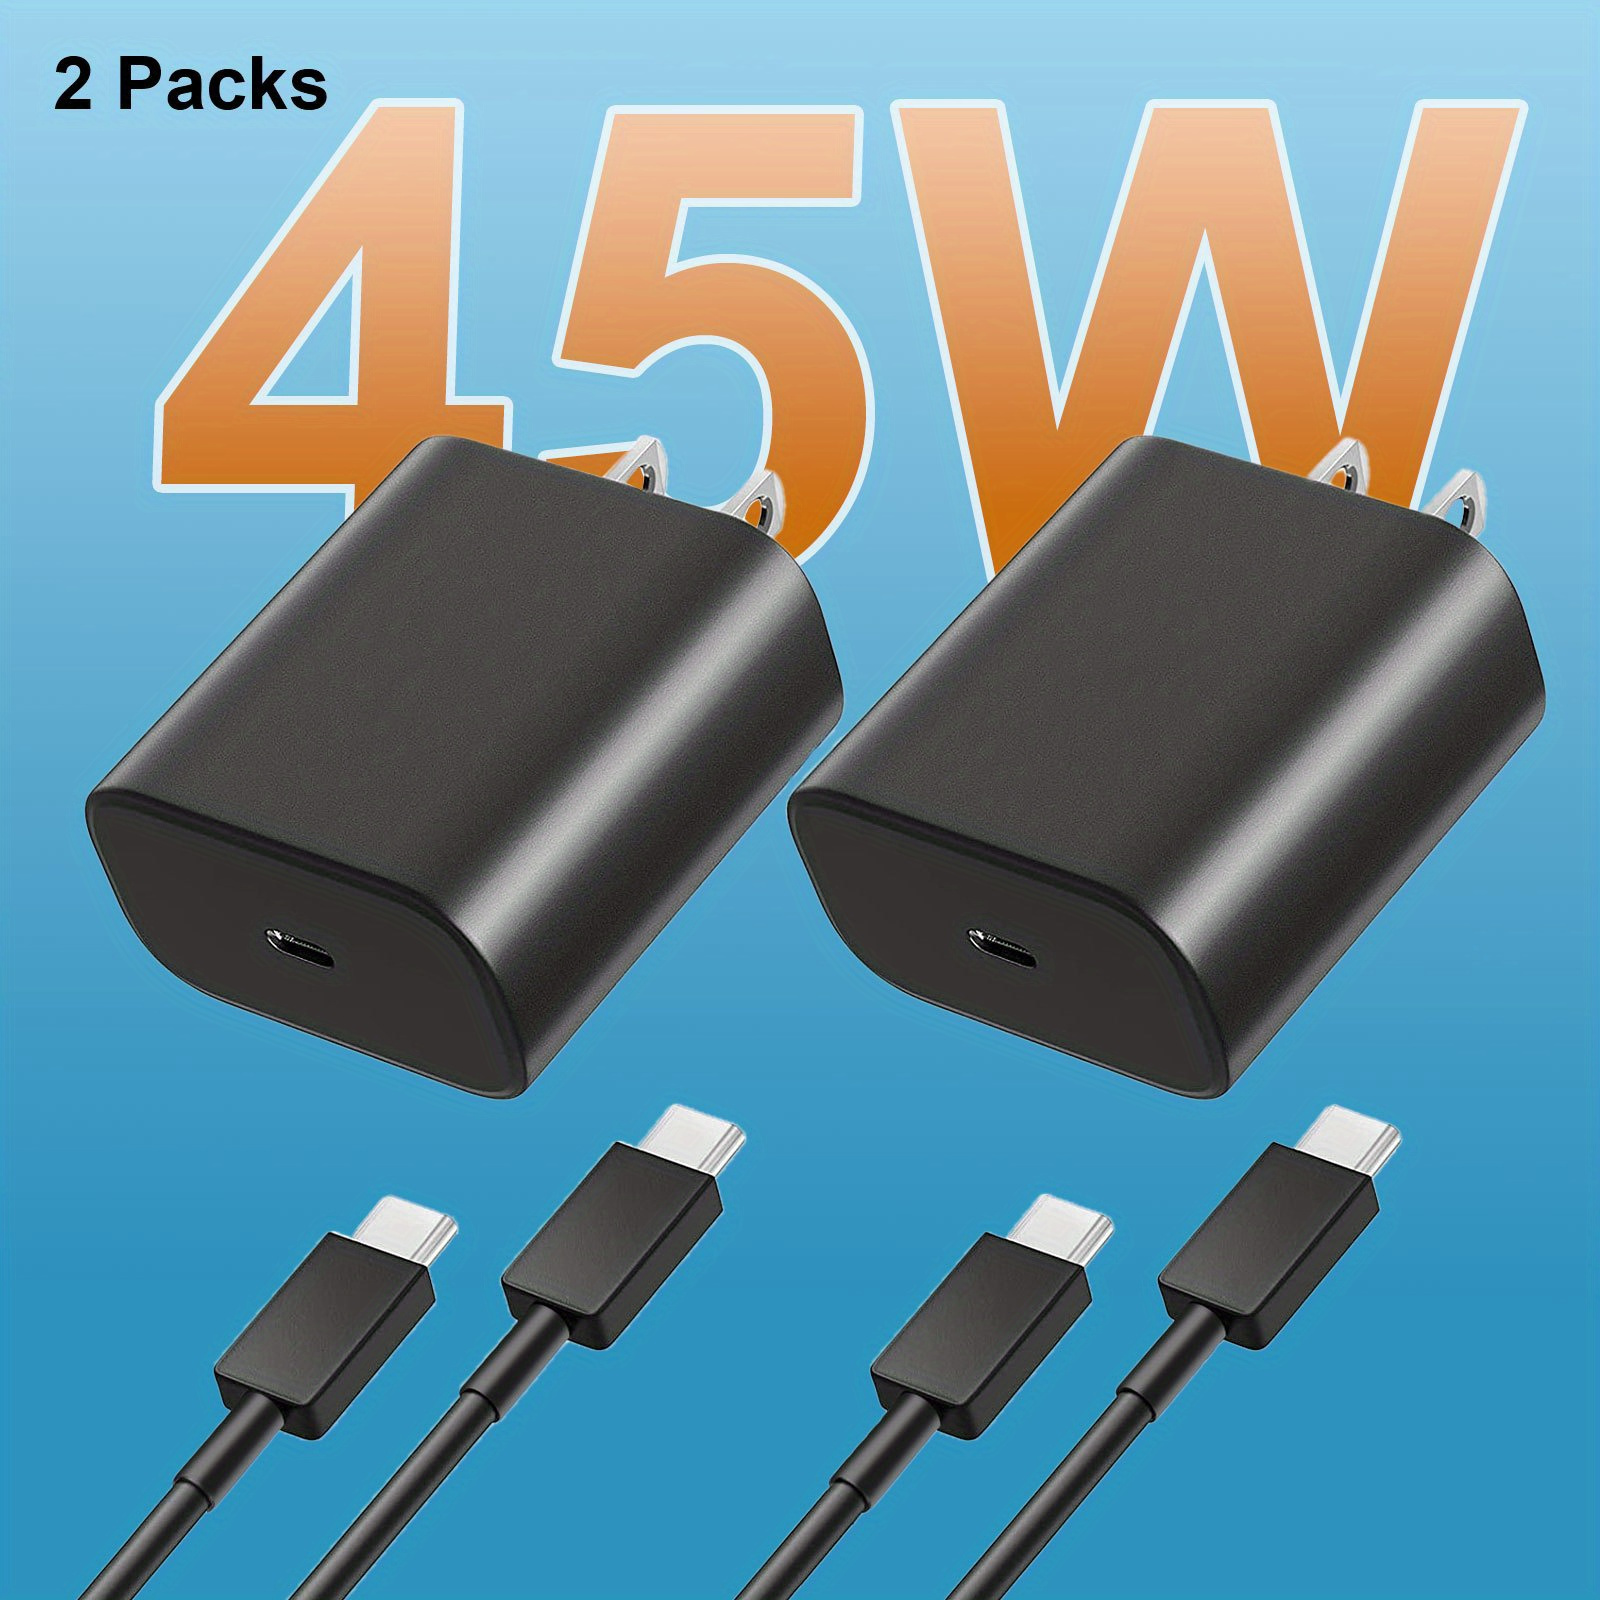 Chargeur rapide + câble USB C de 2,2 m. 25W PD QuickCharge & USB 3.1 /  Chargeur de